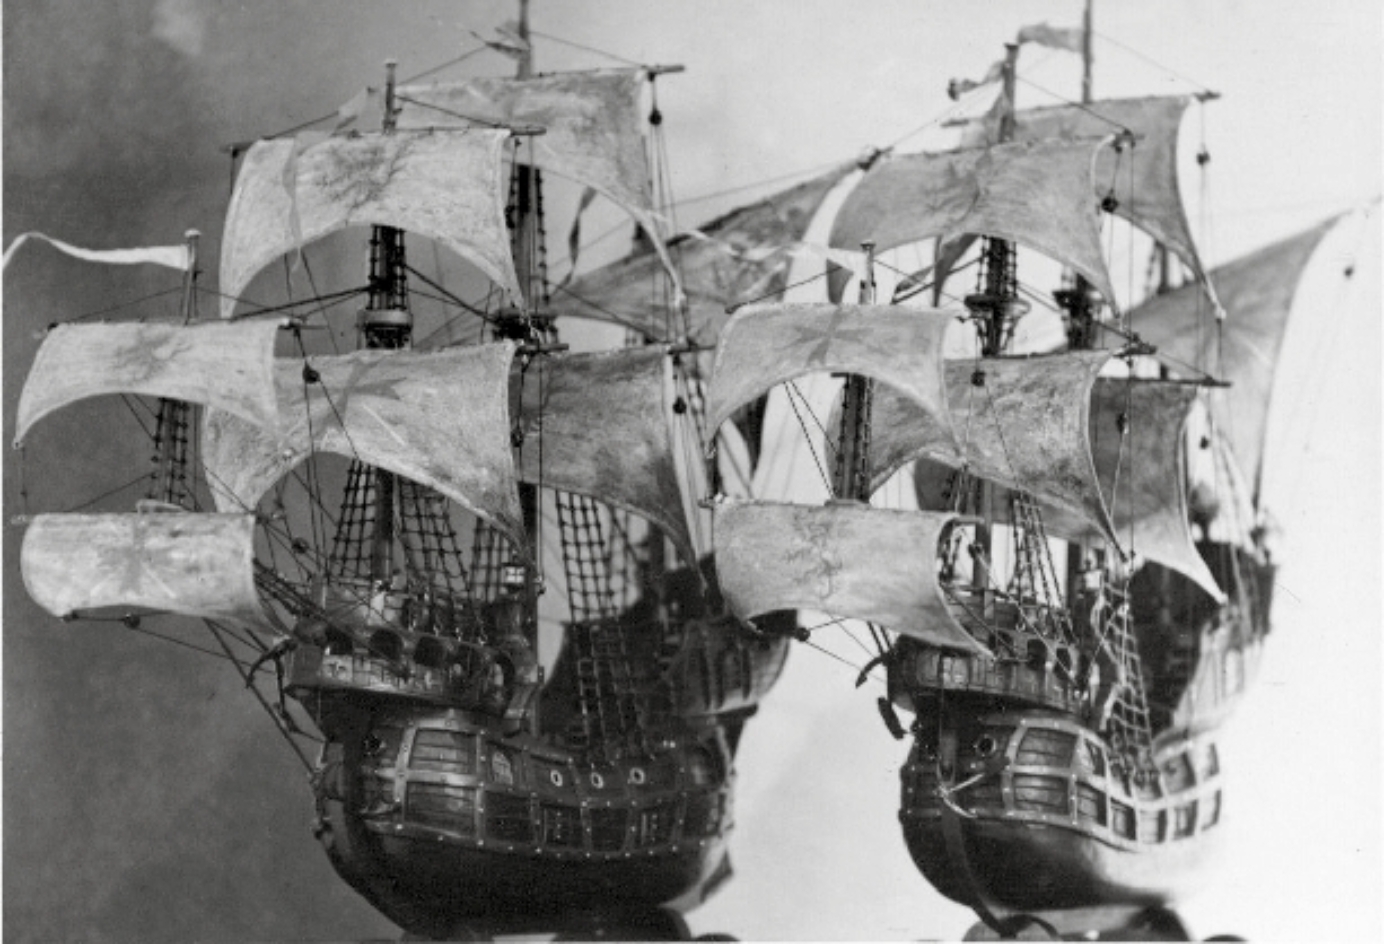 Schwarz-Weiß-Bild zweier Schiffsmodelle